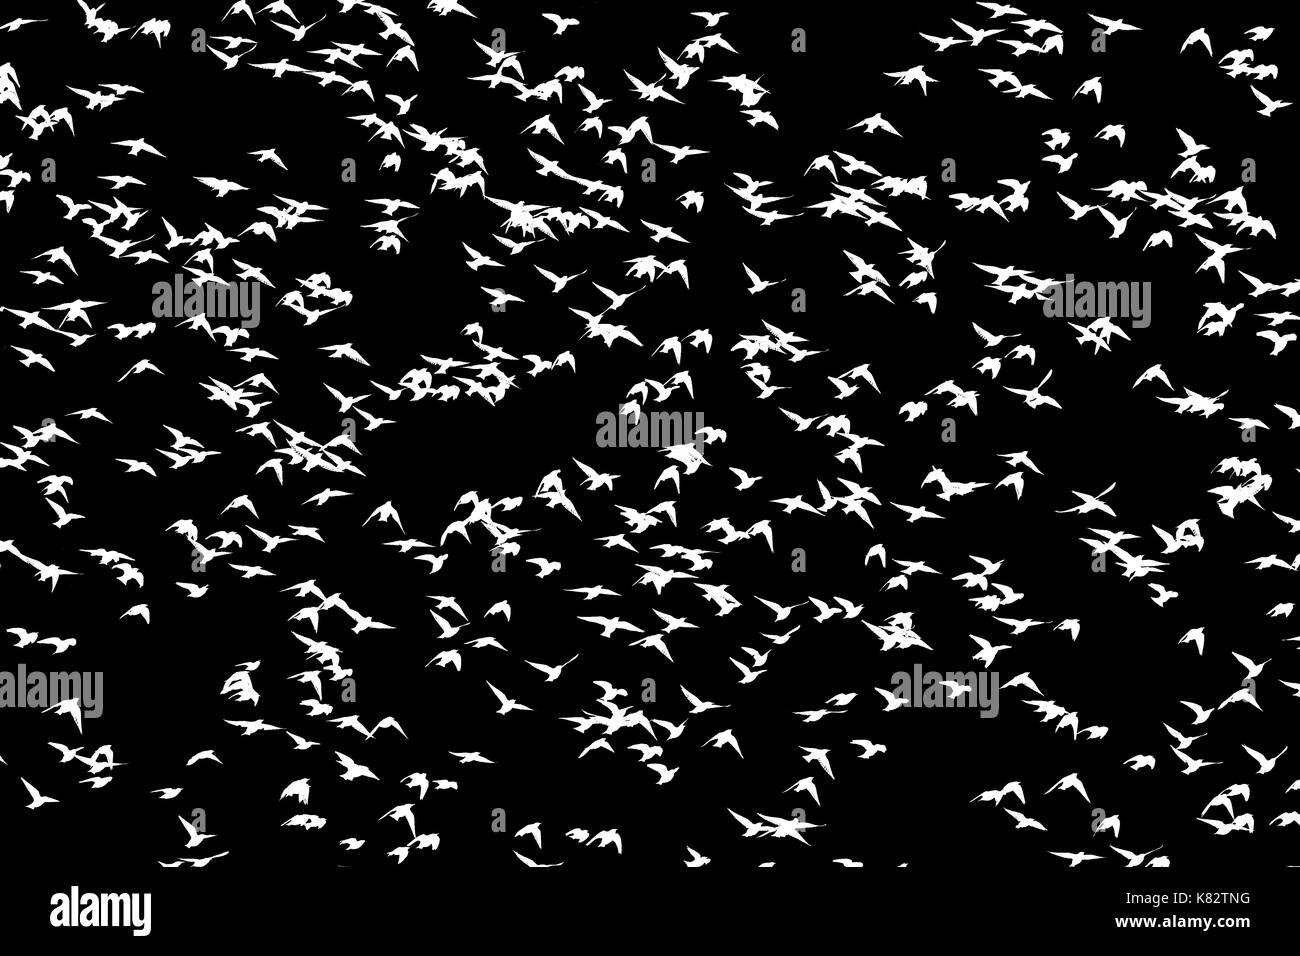 Stare fliegen auf einem schwarzen Hintergrund, die Tier- und Pflanzenwelt, einzigartige Frames Stockfoto